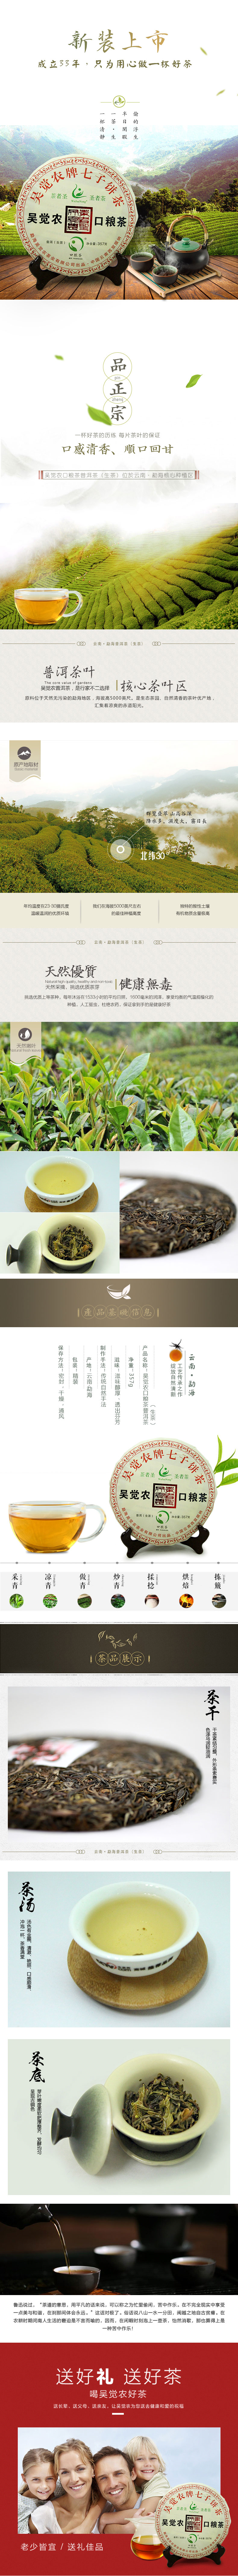 吴觉农口粮茶-新品上市(图1)